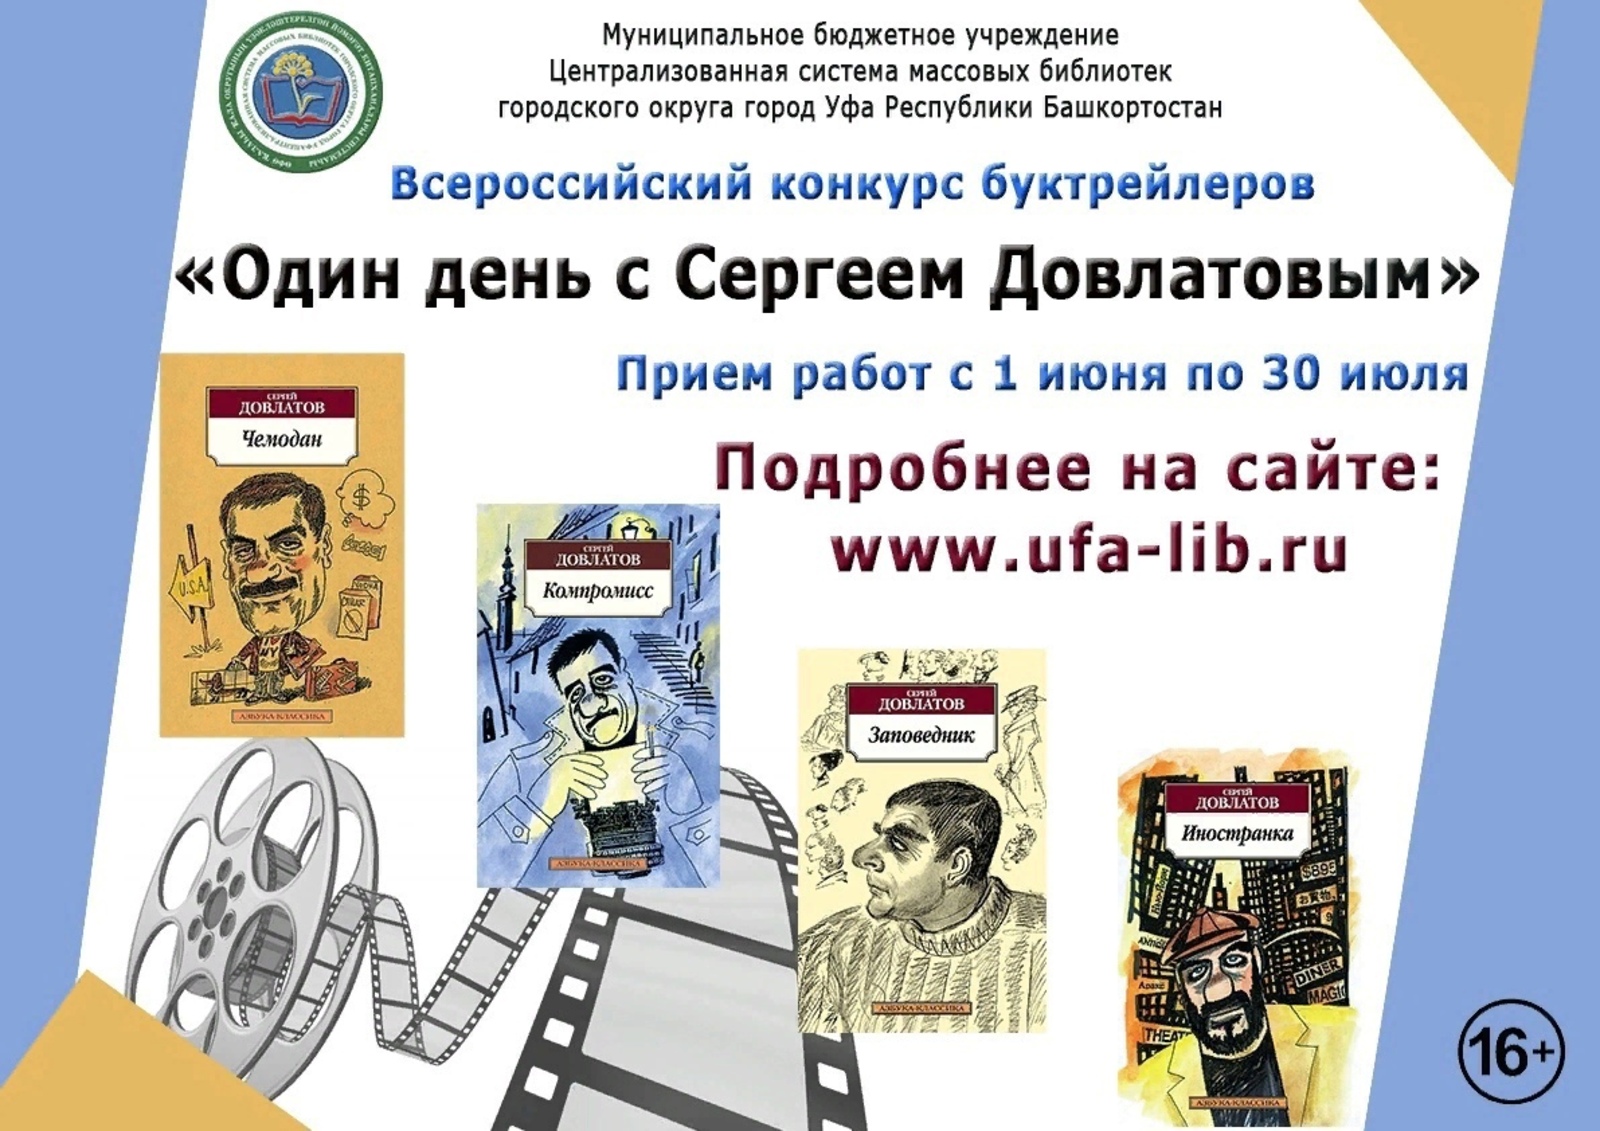 В Уфе проходит Всероссийский конкурс буктрейлеров «Один день с Сергеем Довлатовым»